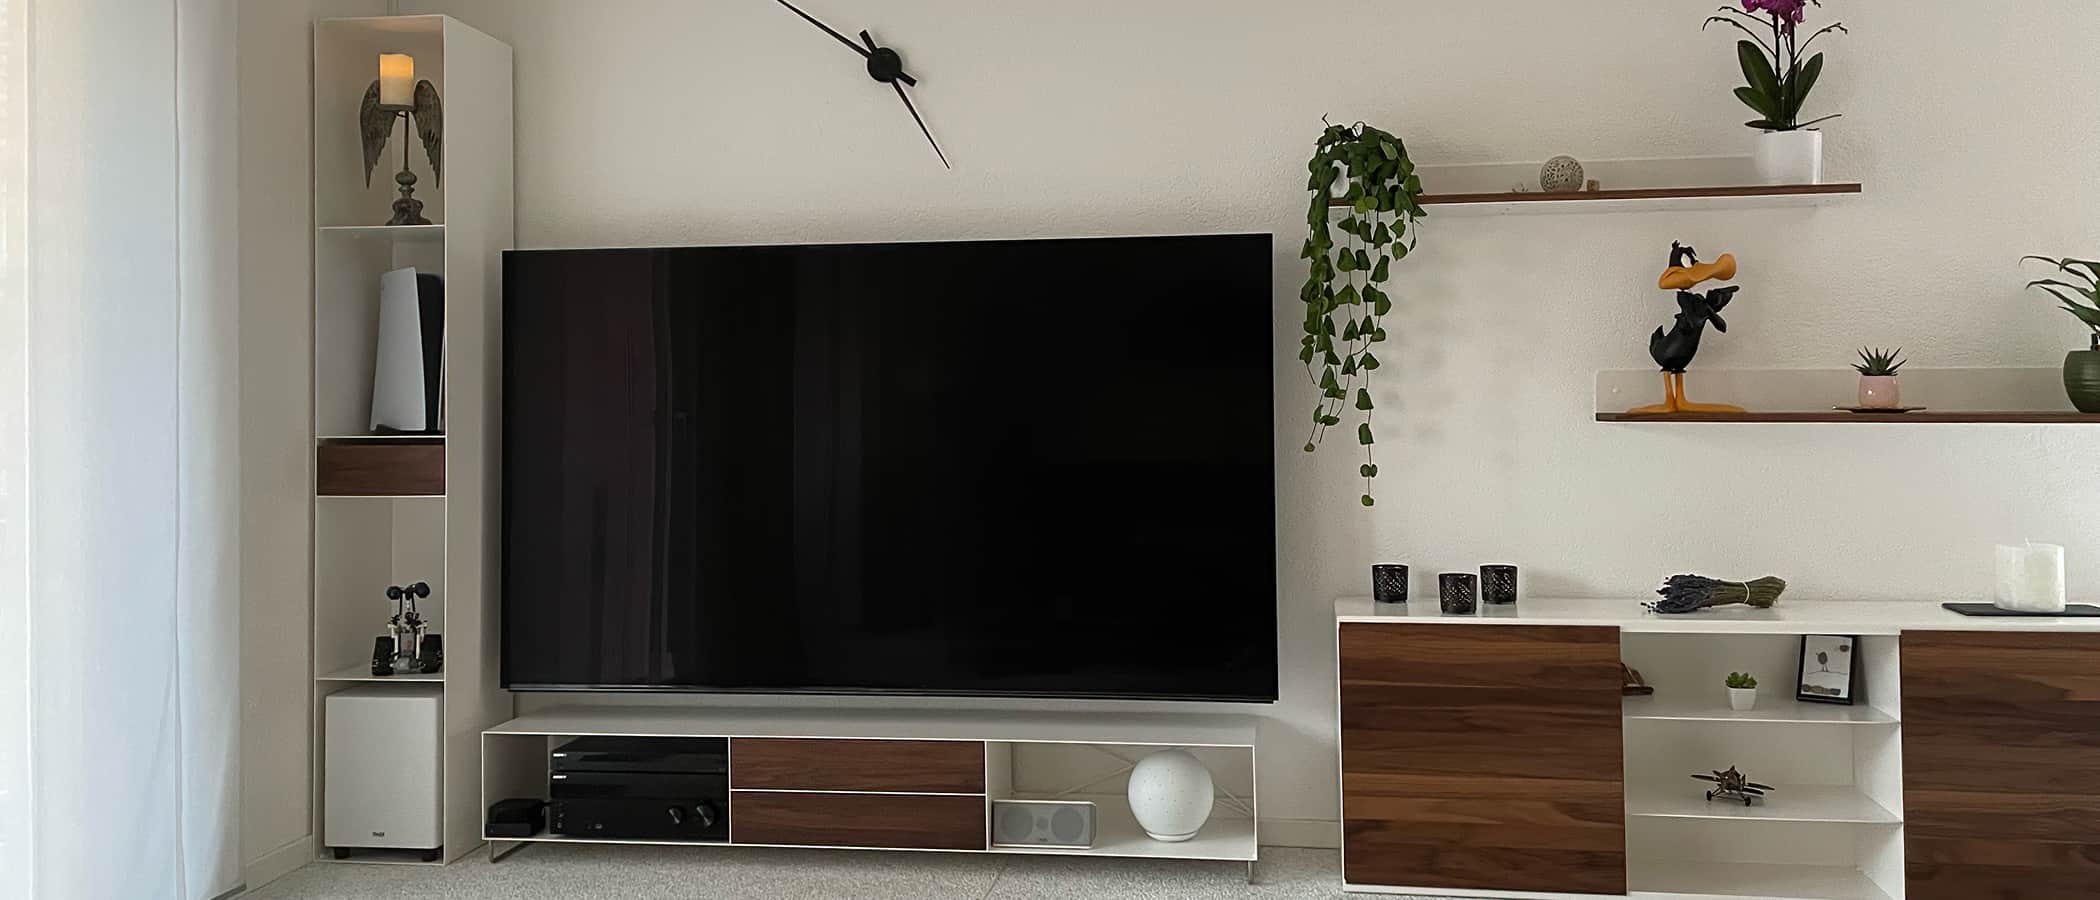 moebel-online-kaufen-tv-lowboard-sideboard-regal-weiss-holz-massiv-modern-metall-massivholz-industrial-breit-hoch-wohnzimmer